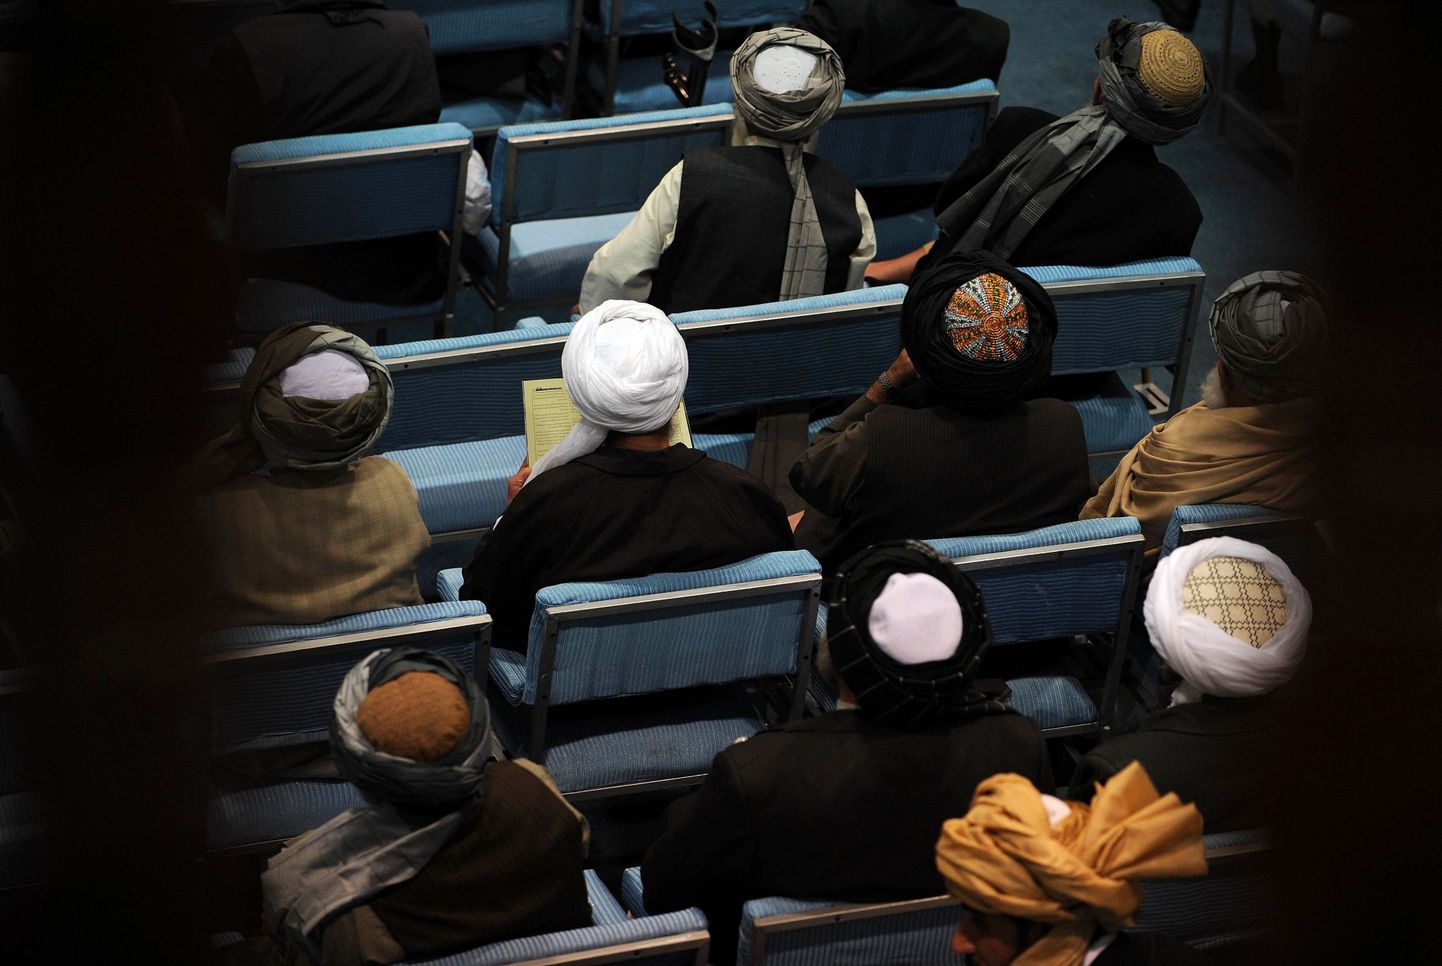 Afganistani hõimuliidrite suurkogule ehk loya jirgale oodatakse tänavu 3000 esindajat.